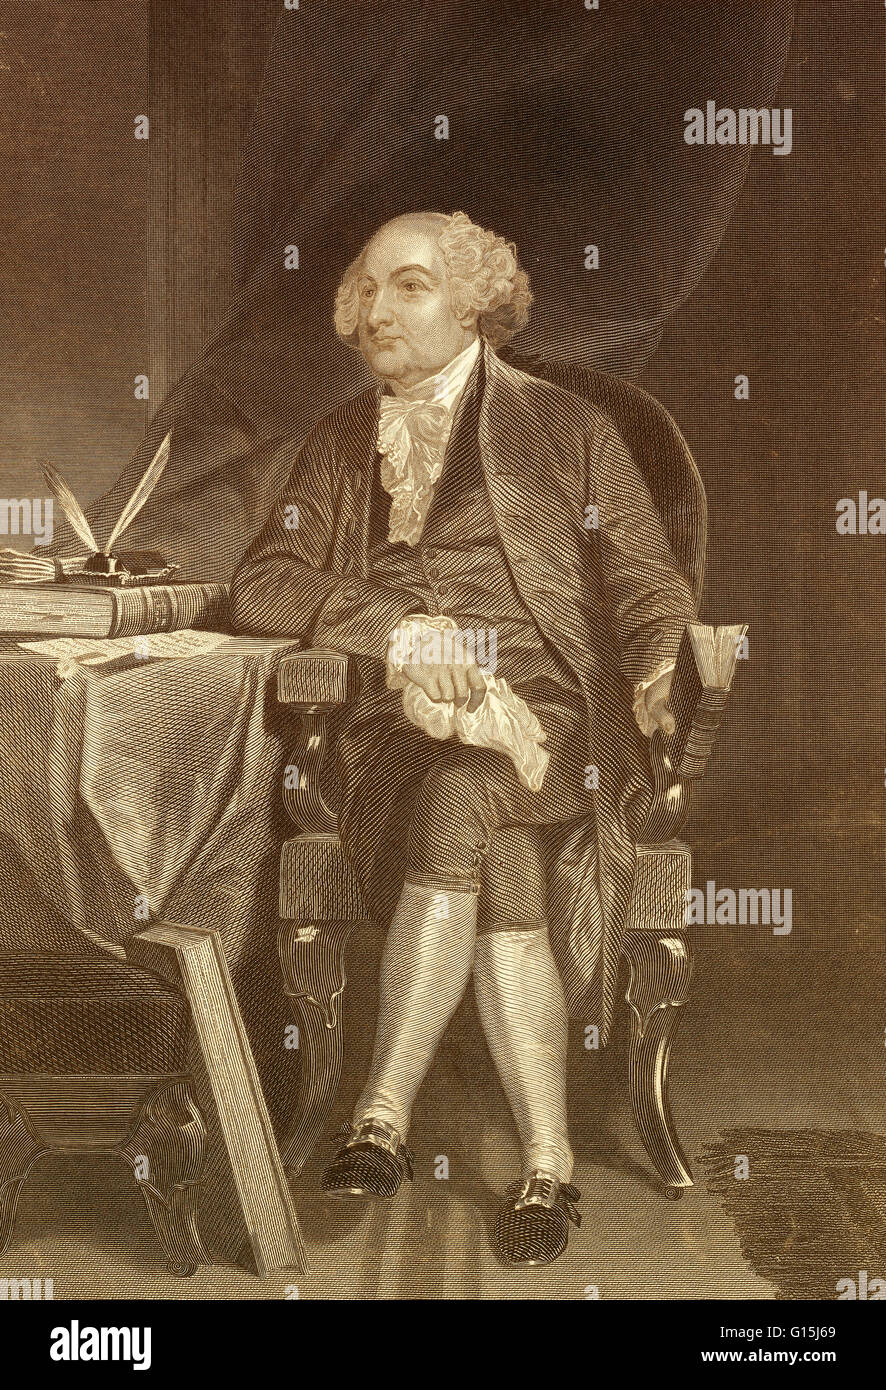 Colore esaltato ritratto di John Adams (1735-1826), il secondo presidente degli Stati Uniti dal 1797 al 1801. A Harvard-educati avvocato dal Massachusetts, Adams servita nel ruolo diplomatico durante la Rivoluzione Americana. Ha servito due termini come Vice Pres Foto Stock